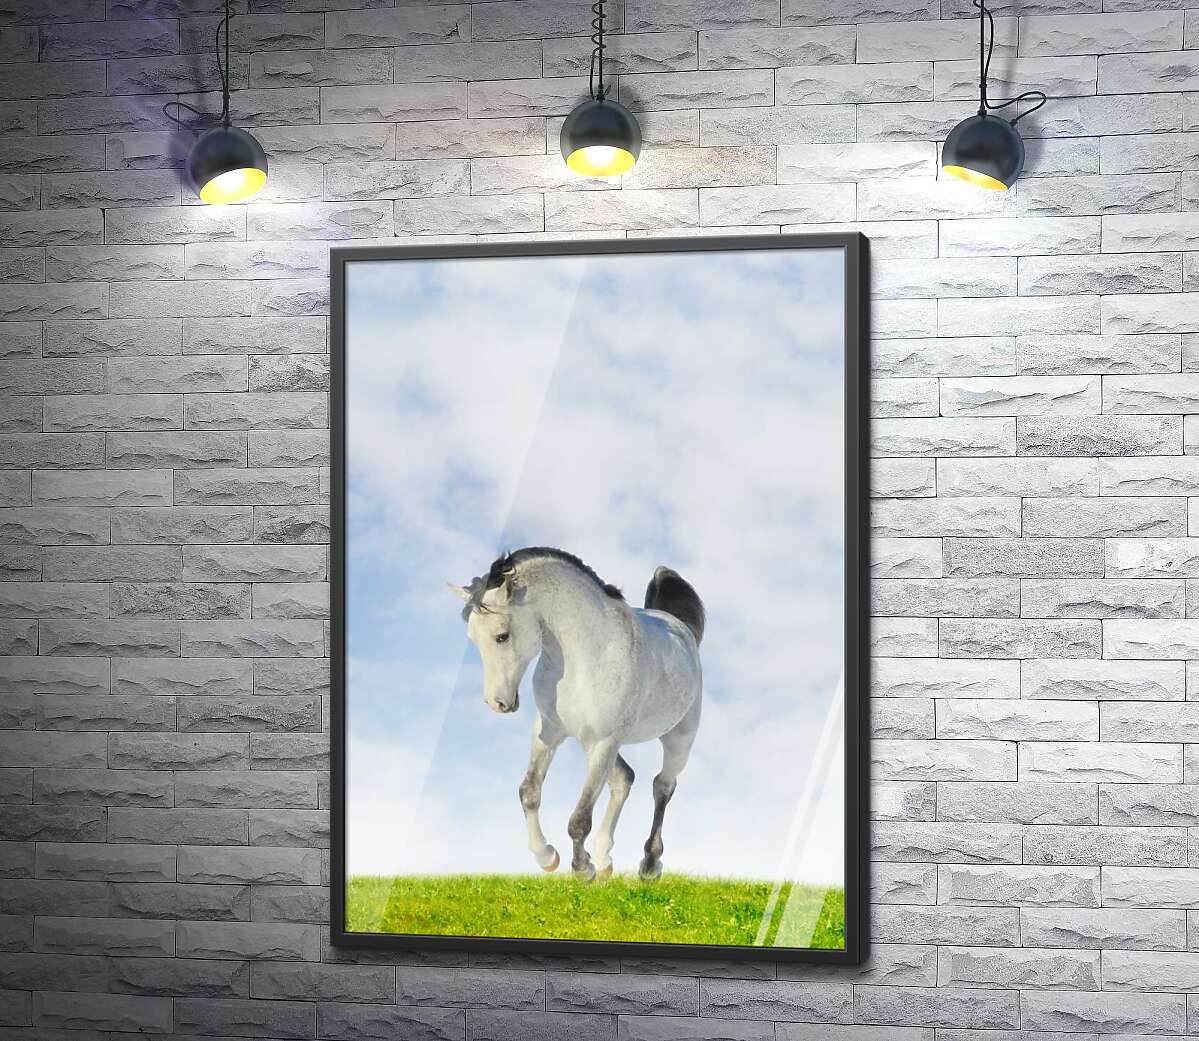 постер Белая лошадь скачет по сочной траве